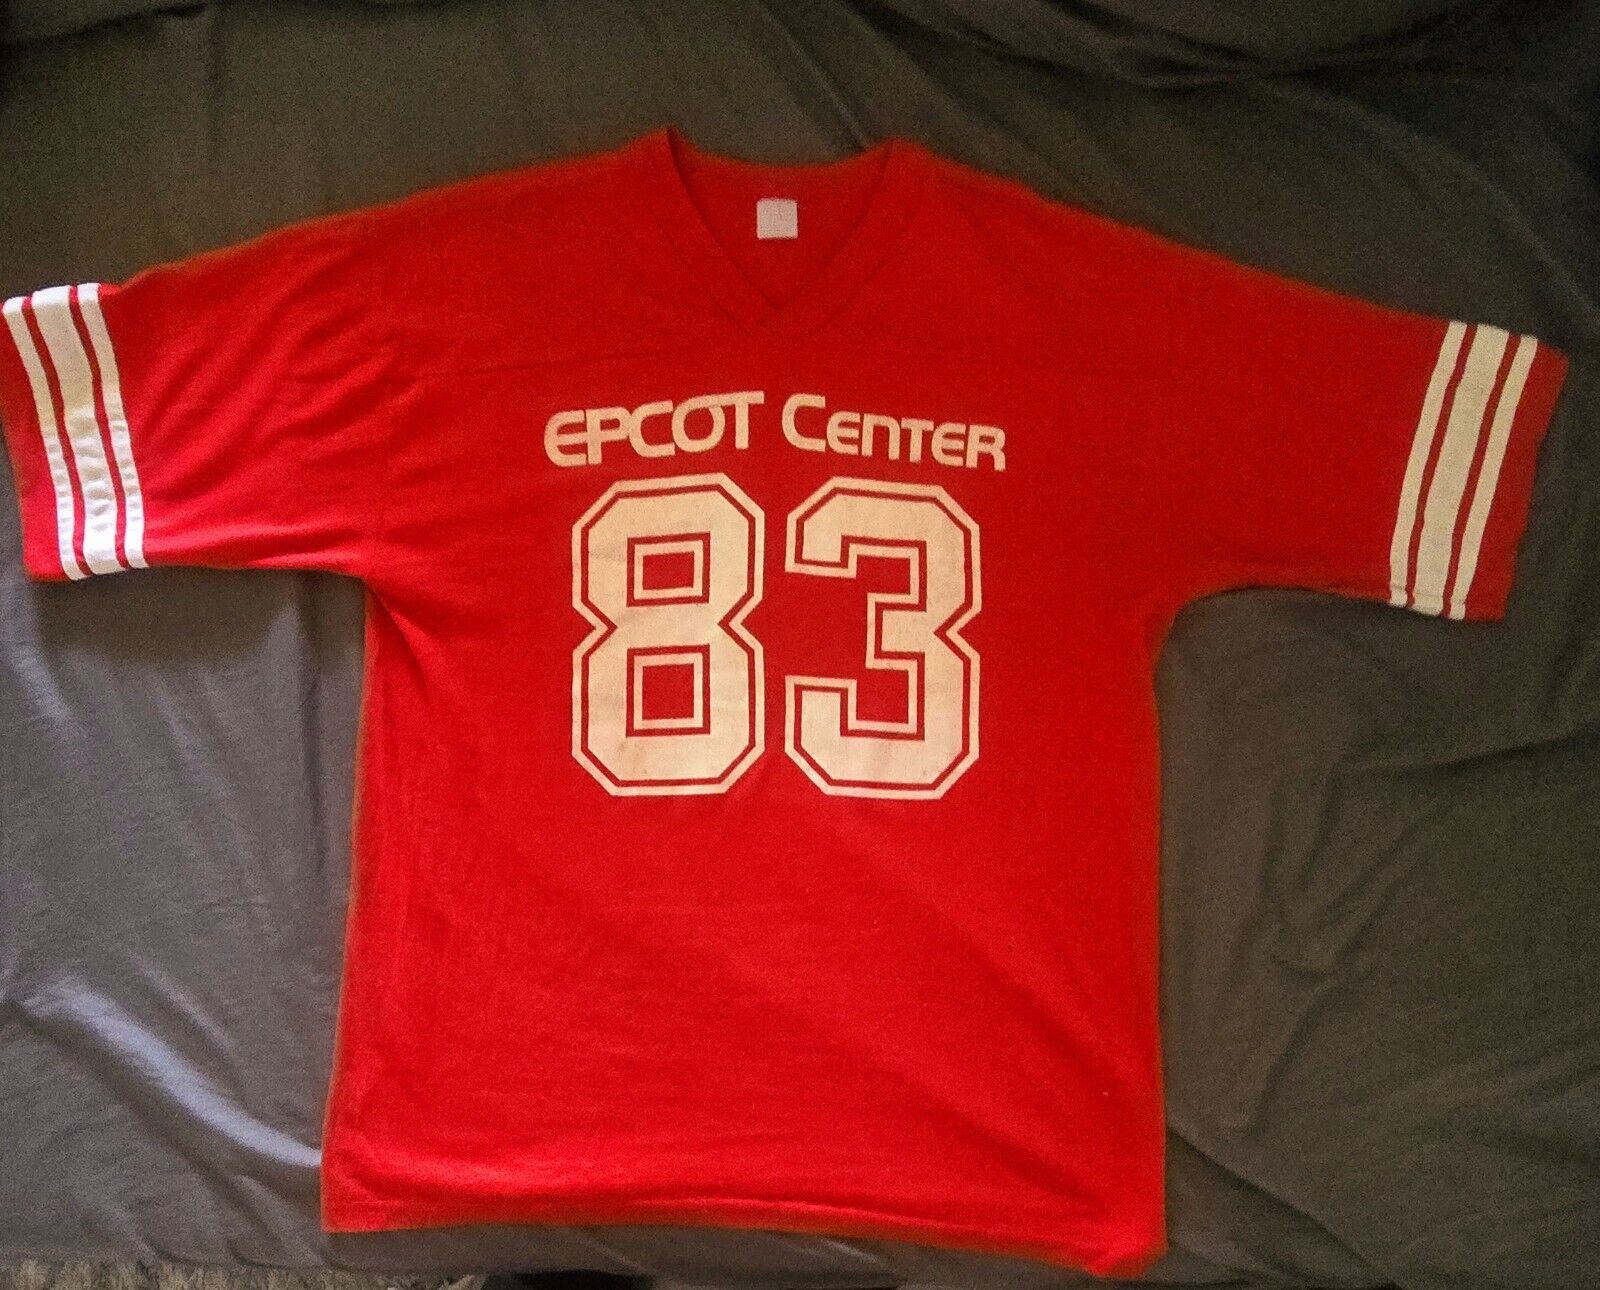 Vintage 1983 epcot center jersey t shirt- Men's Large